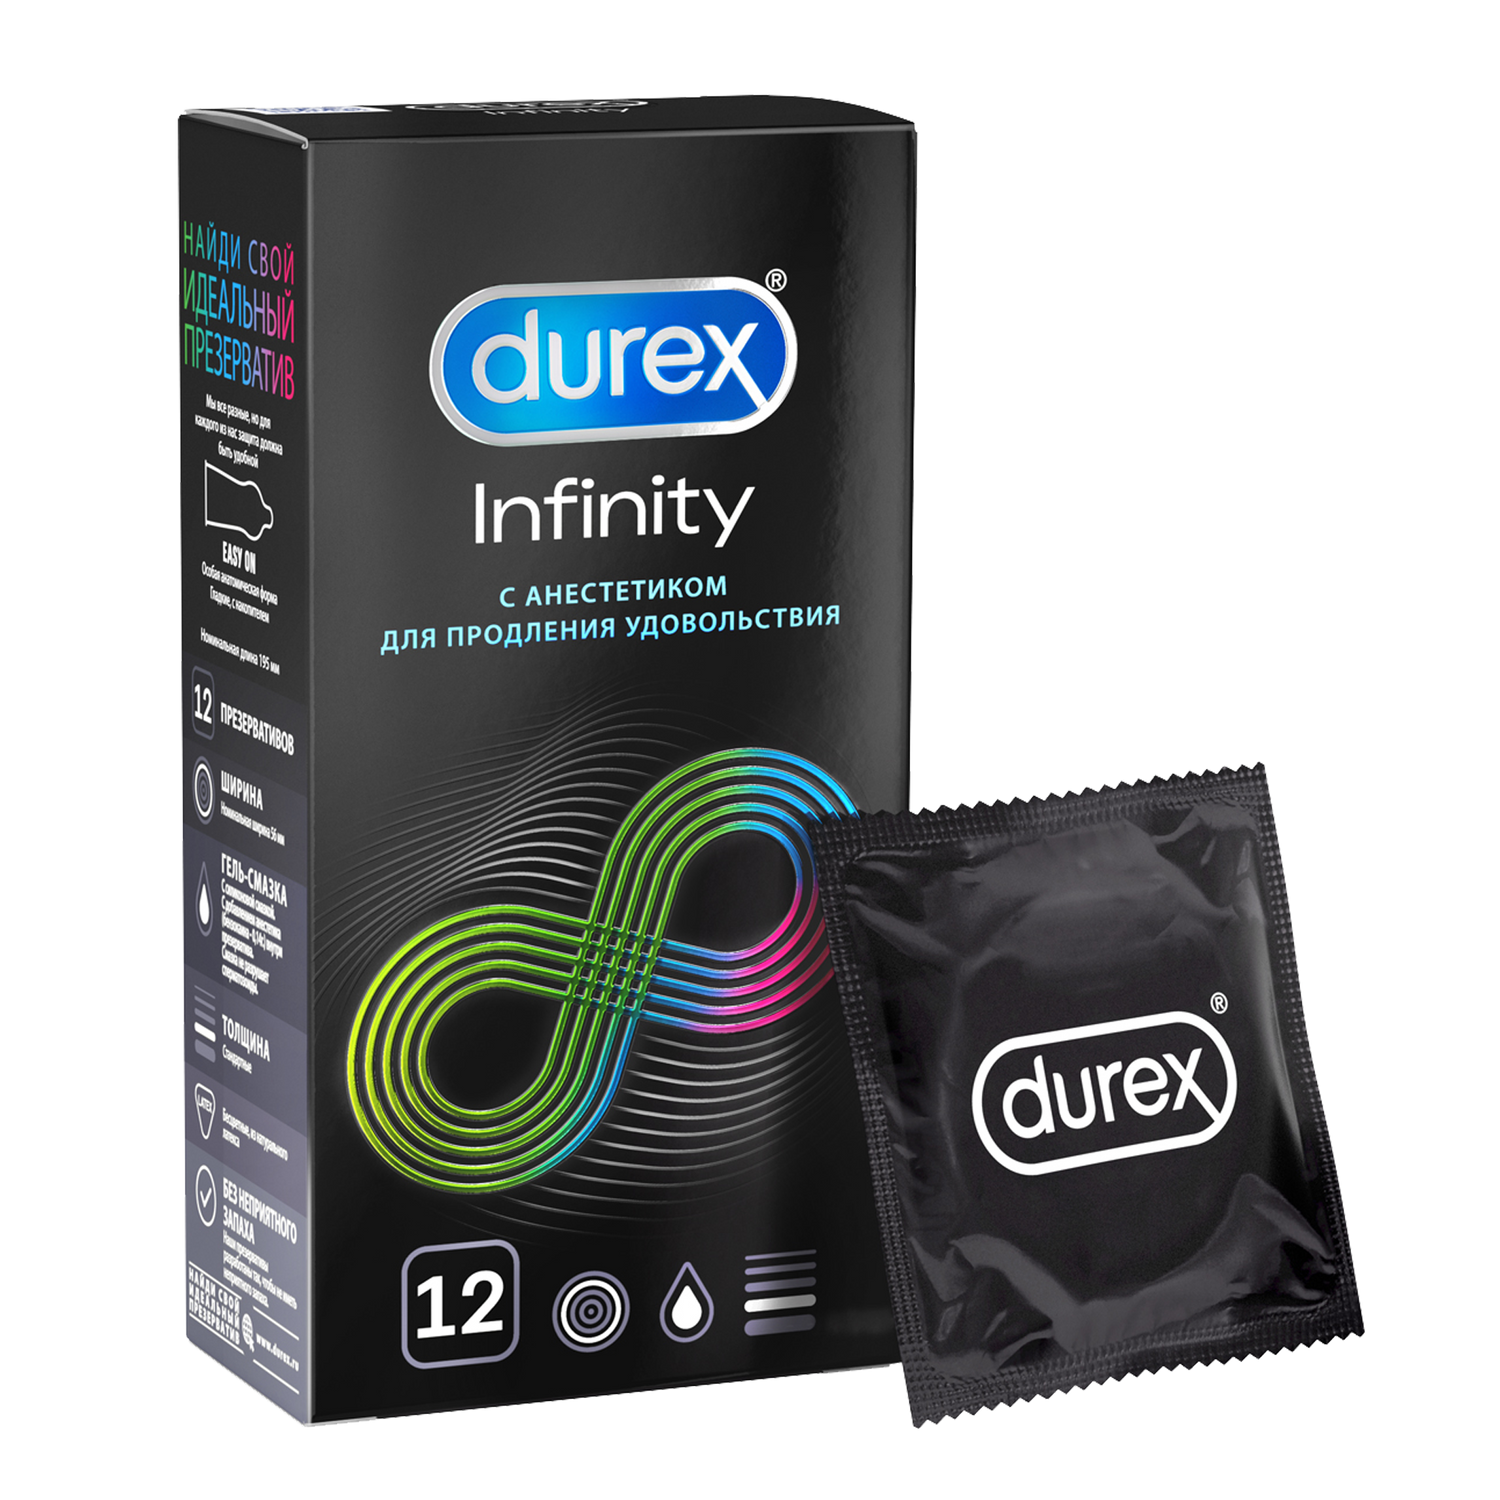 Презервативы Durex Infinity гладкие с анестетиком, 12 шт. презерватив торекс ребристые 12